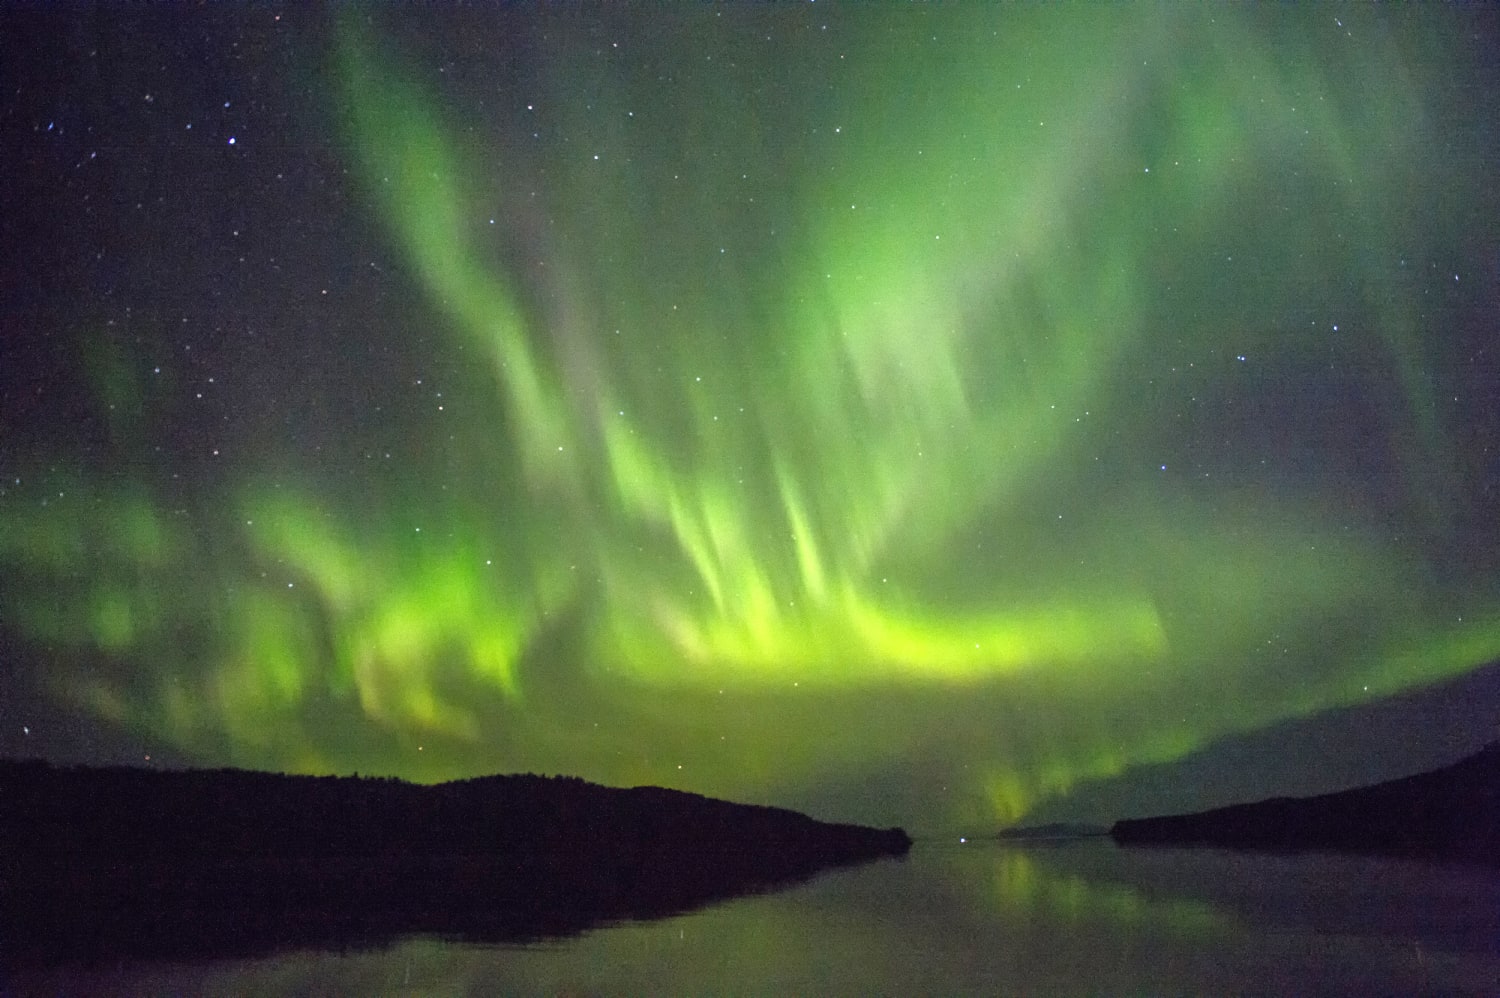 L’aurora boreale può essere visibile nella maggior parte degli Stati Uniti a causa della tempesta solare